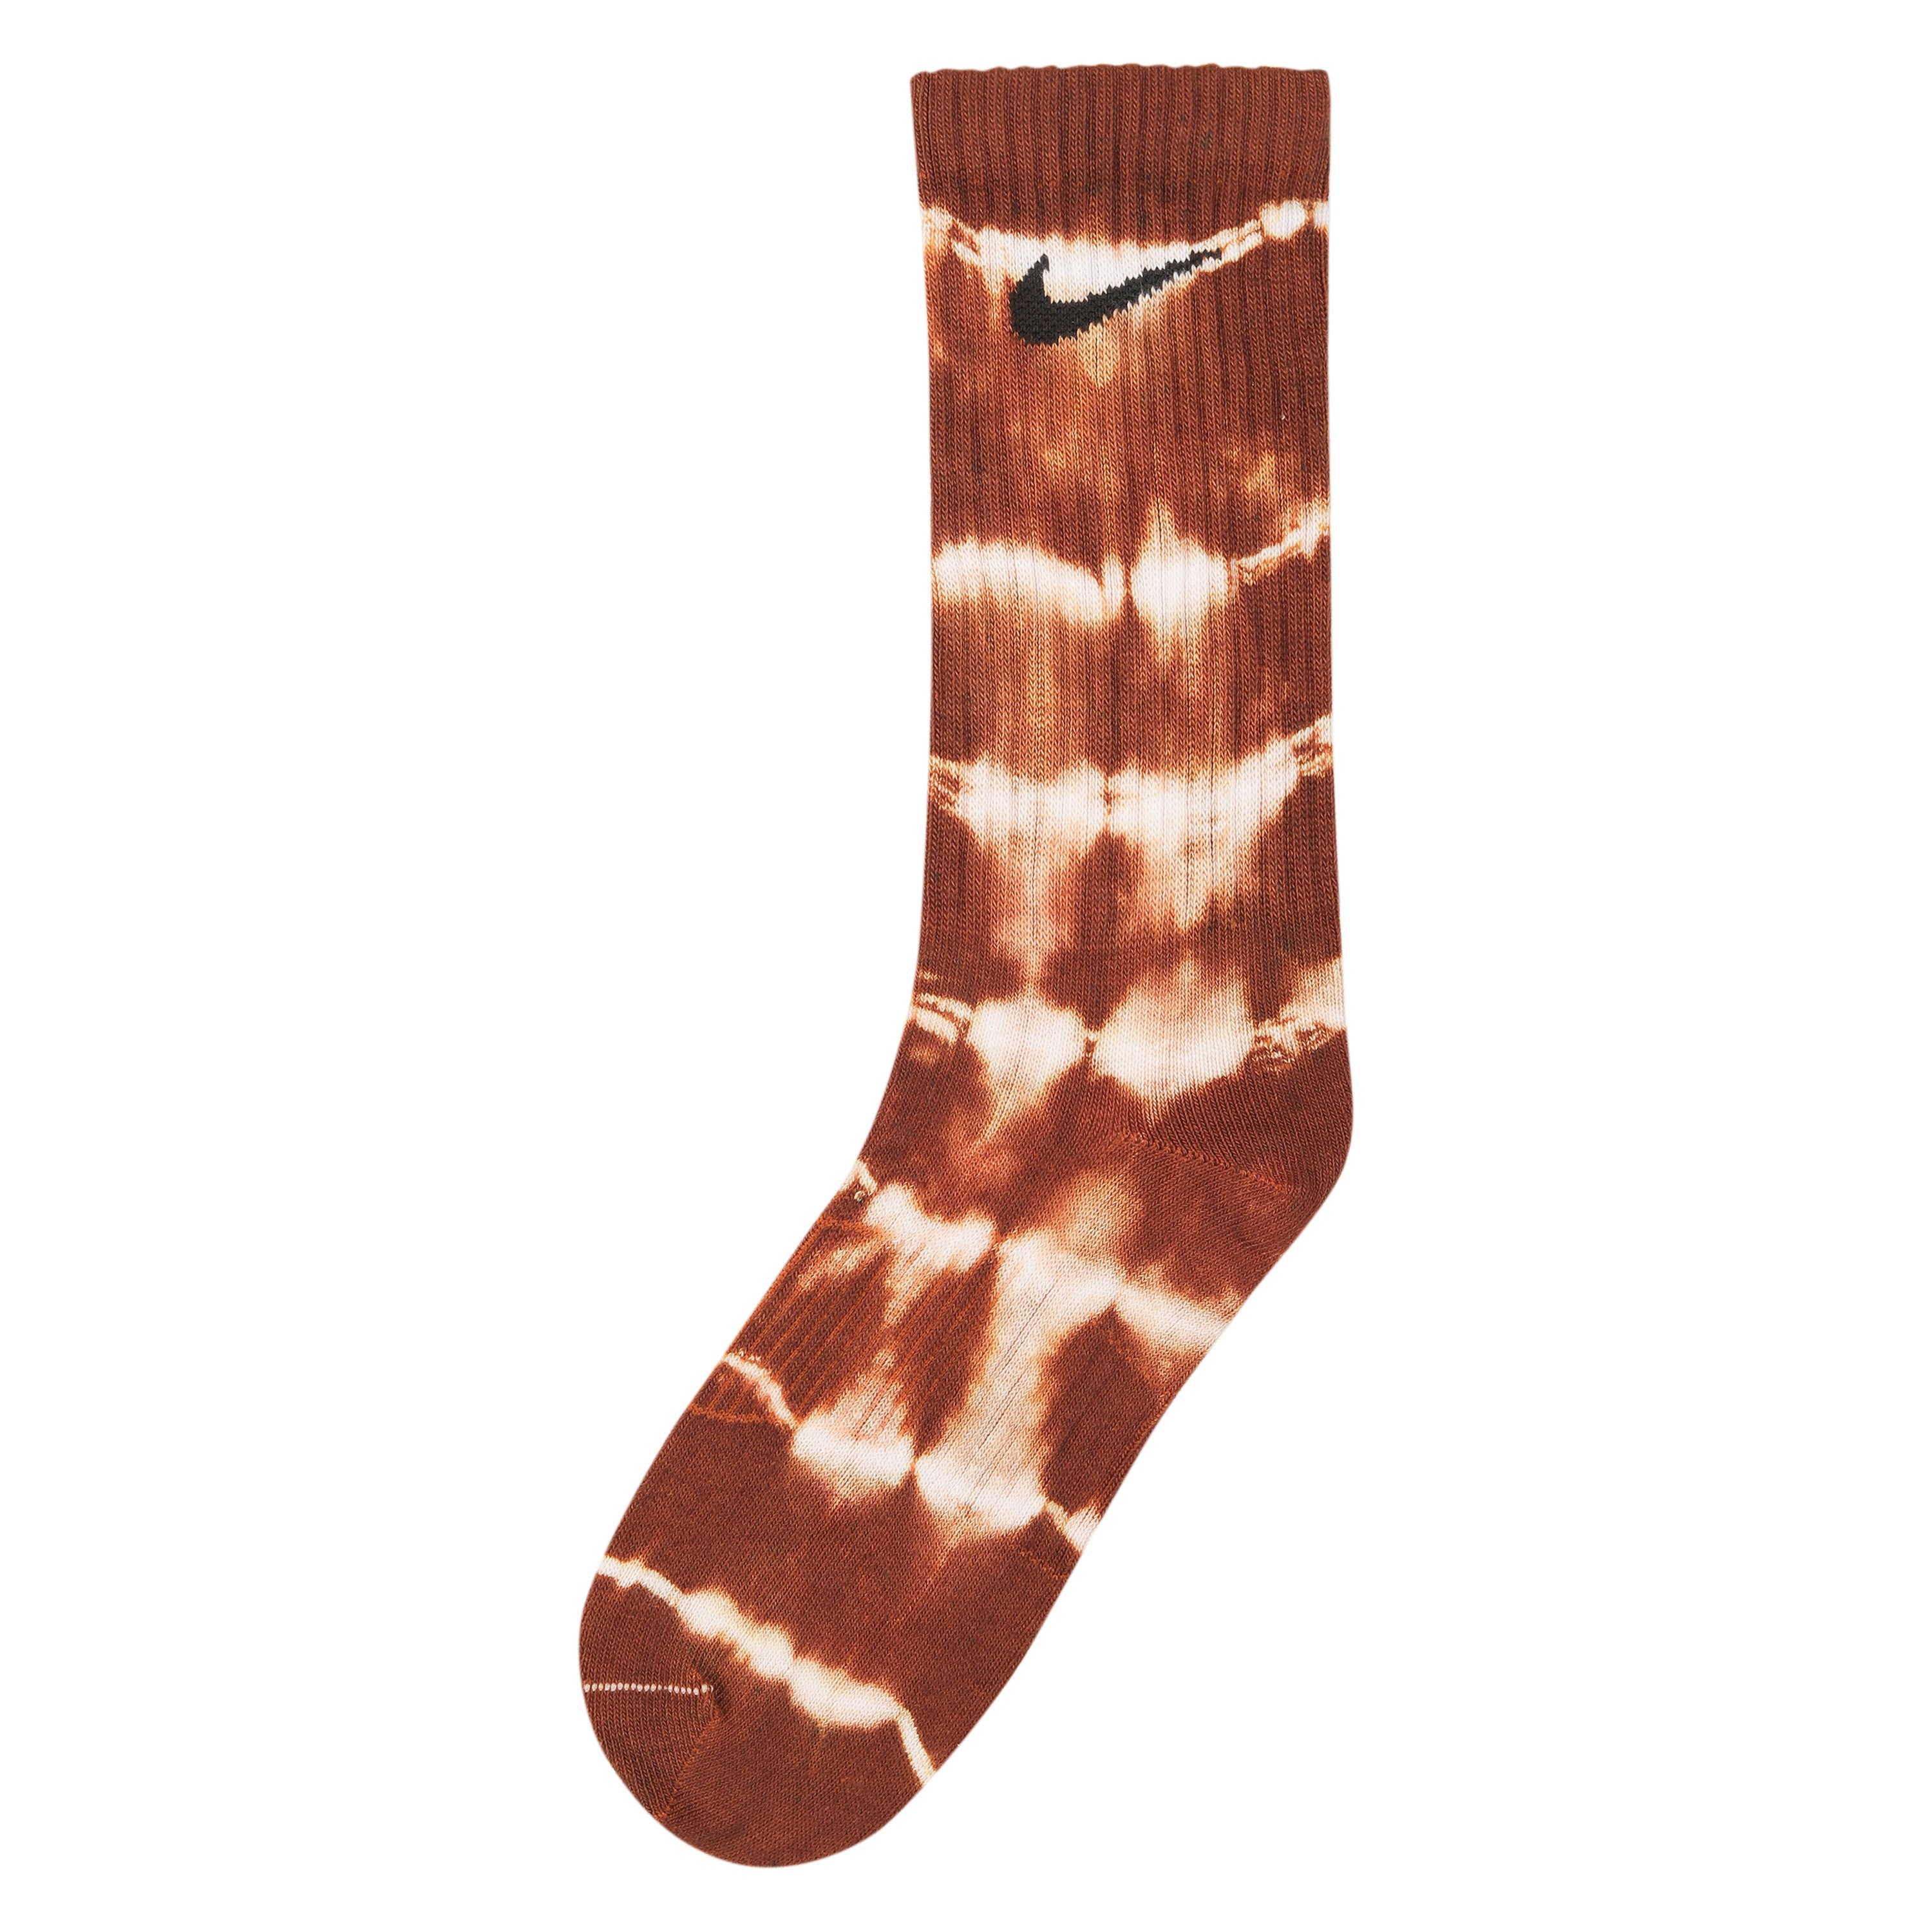 Pack of 3 Essential extras tie-dye socks (Mocha,Maroon,Blue)